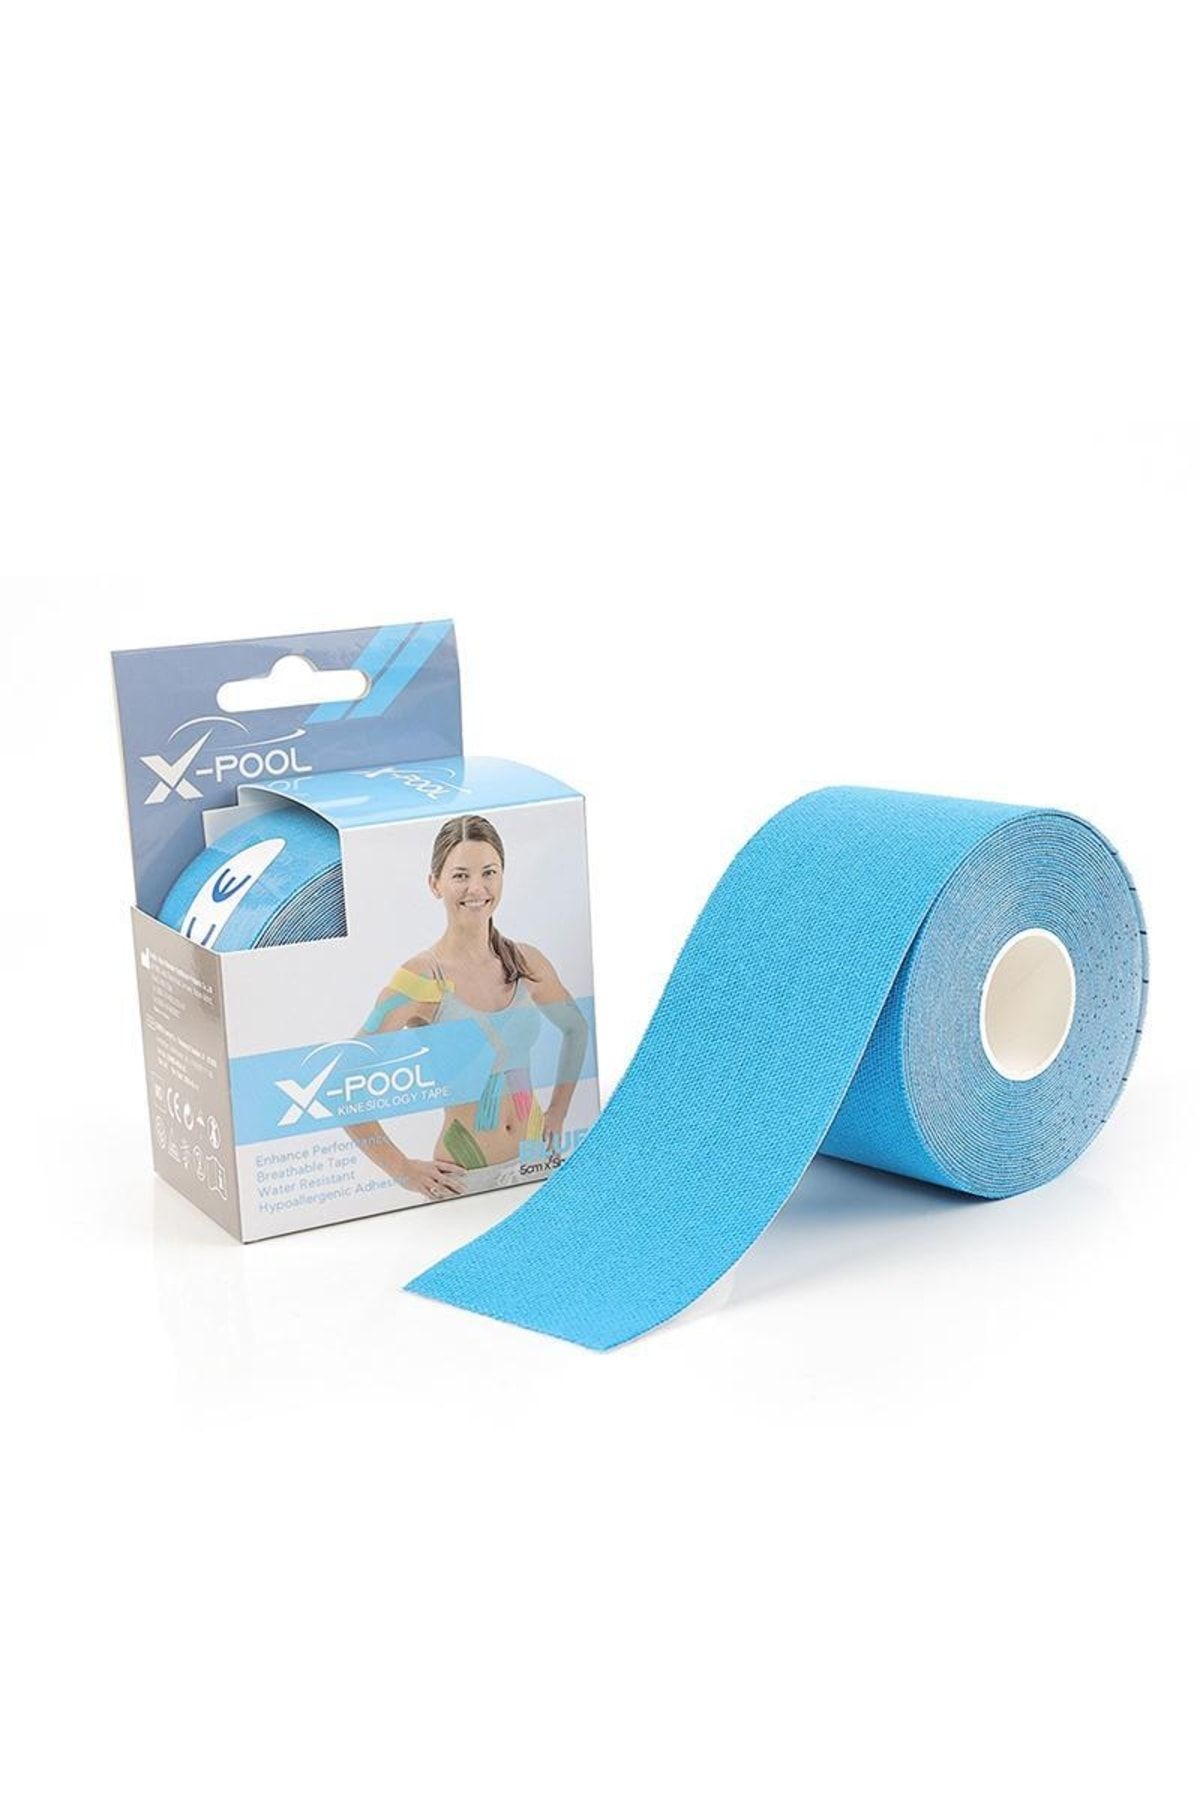 X Pool Kinezyo Tape Mavi Rengi, Kinesio Tape Kas Ağrı Bandı